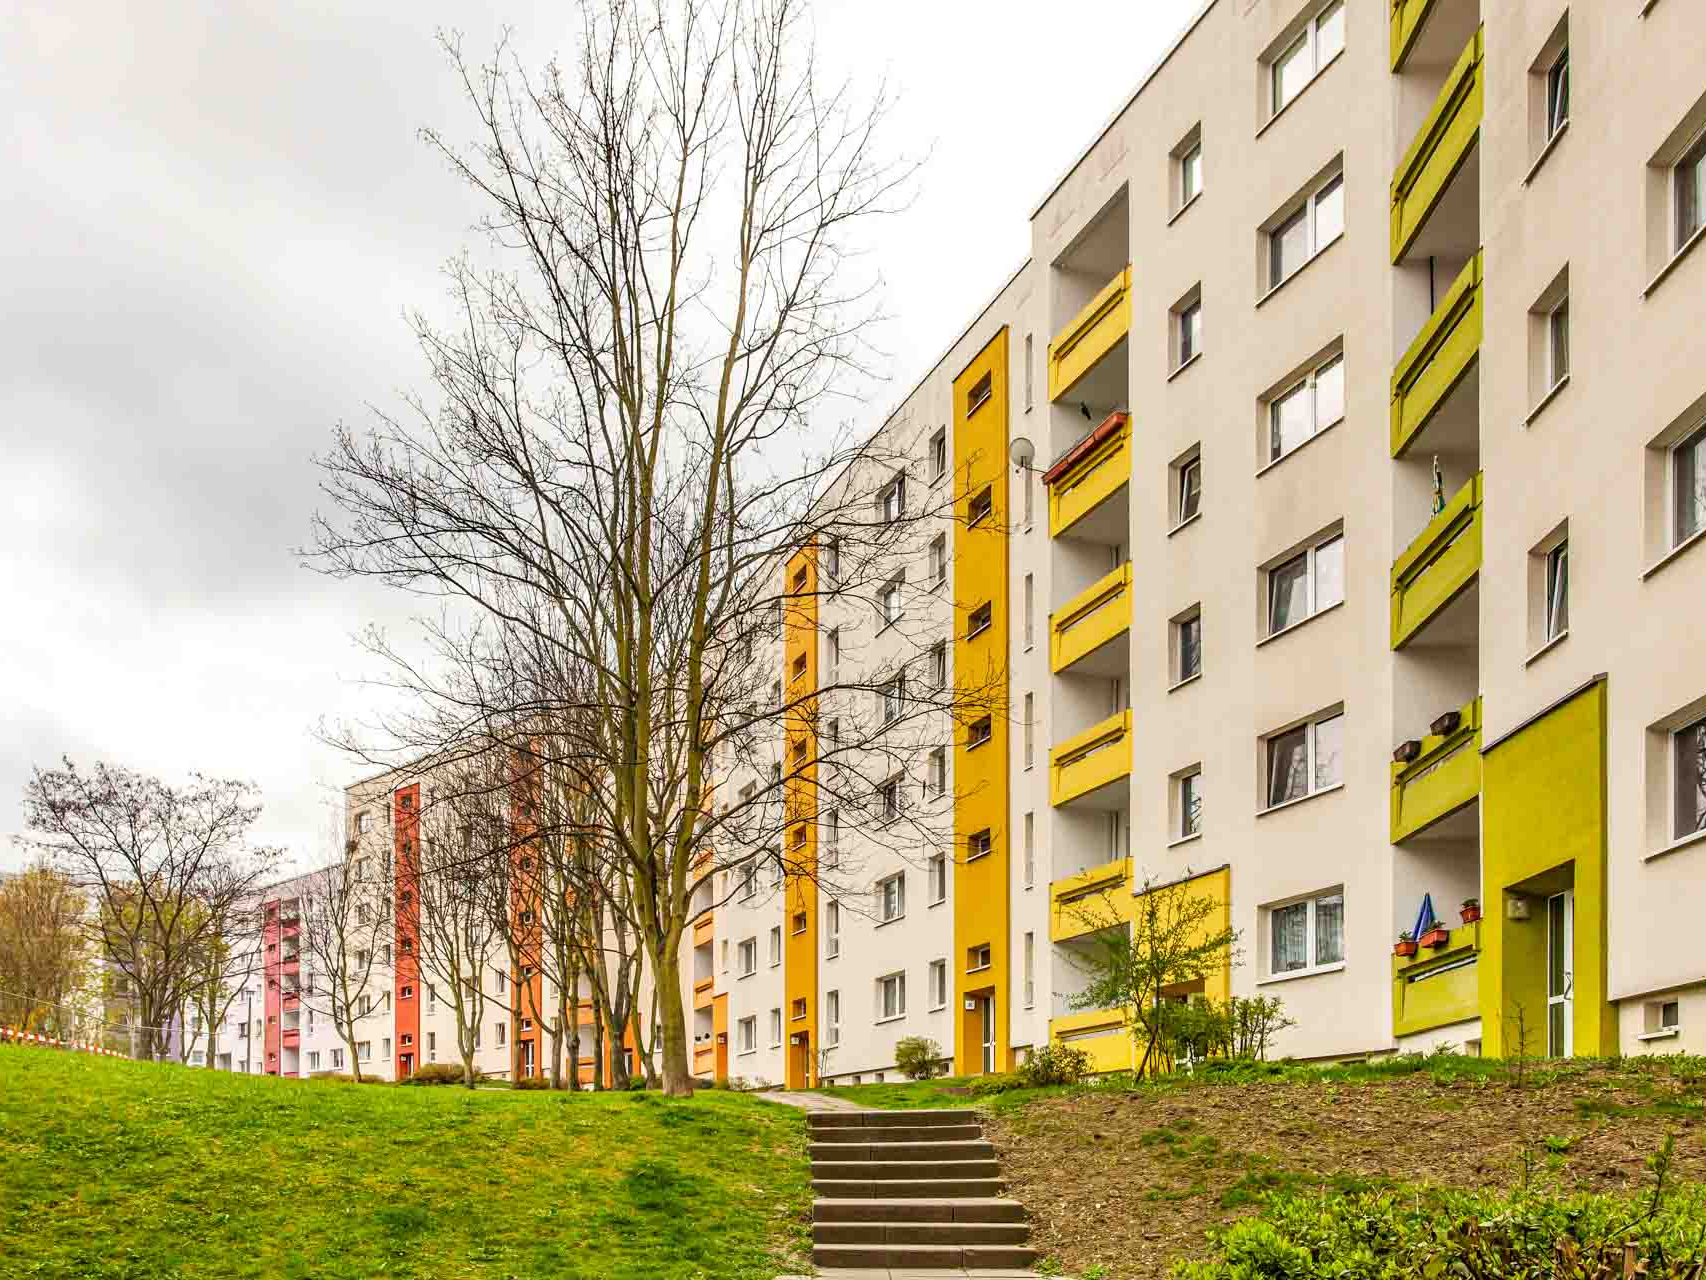 Grüner Innenhof mit farbenfrohen Hauseingängen.